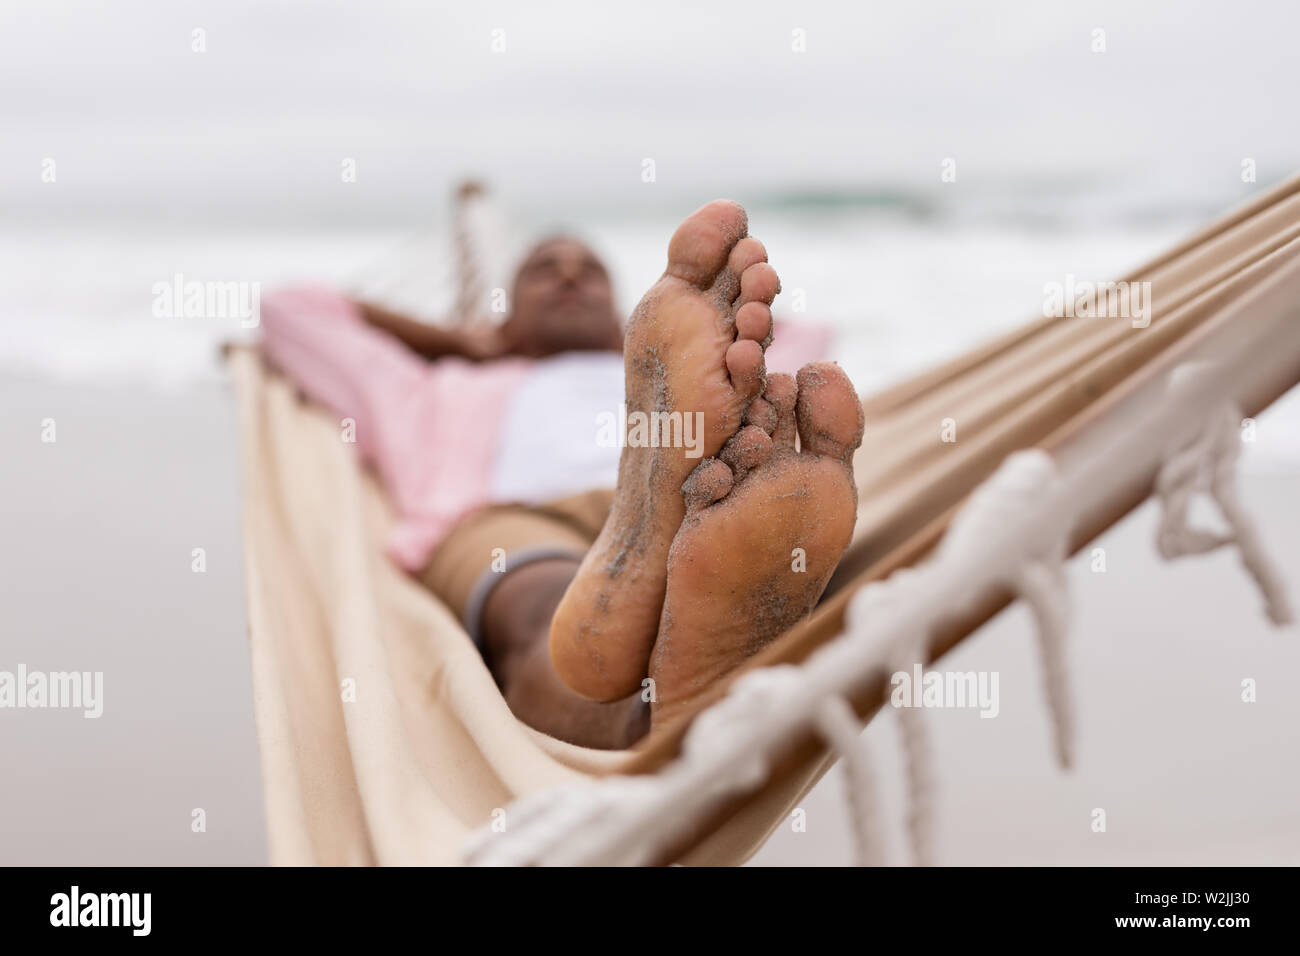 Man sleeping with hands behind head on a hammock Stock Photo